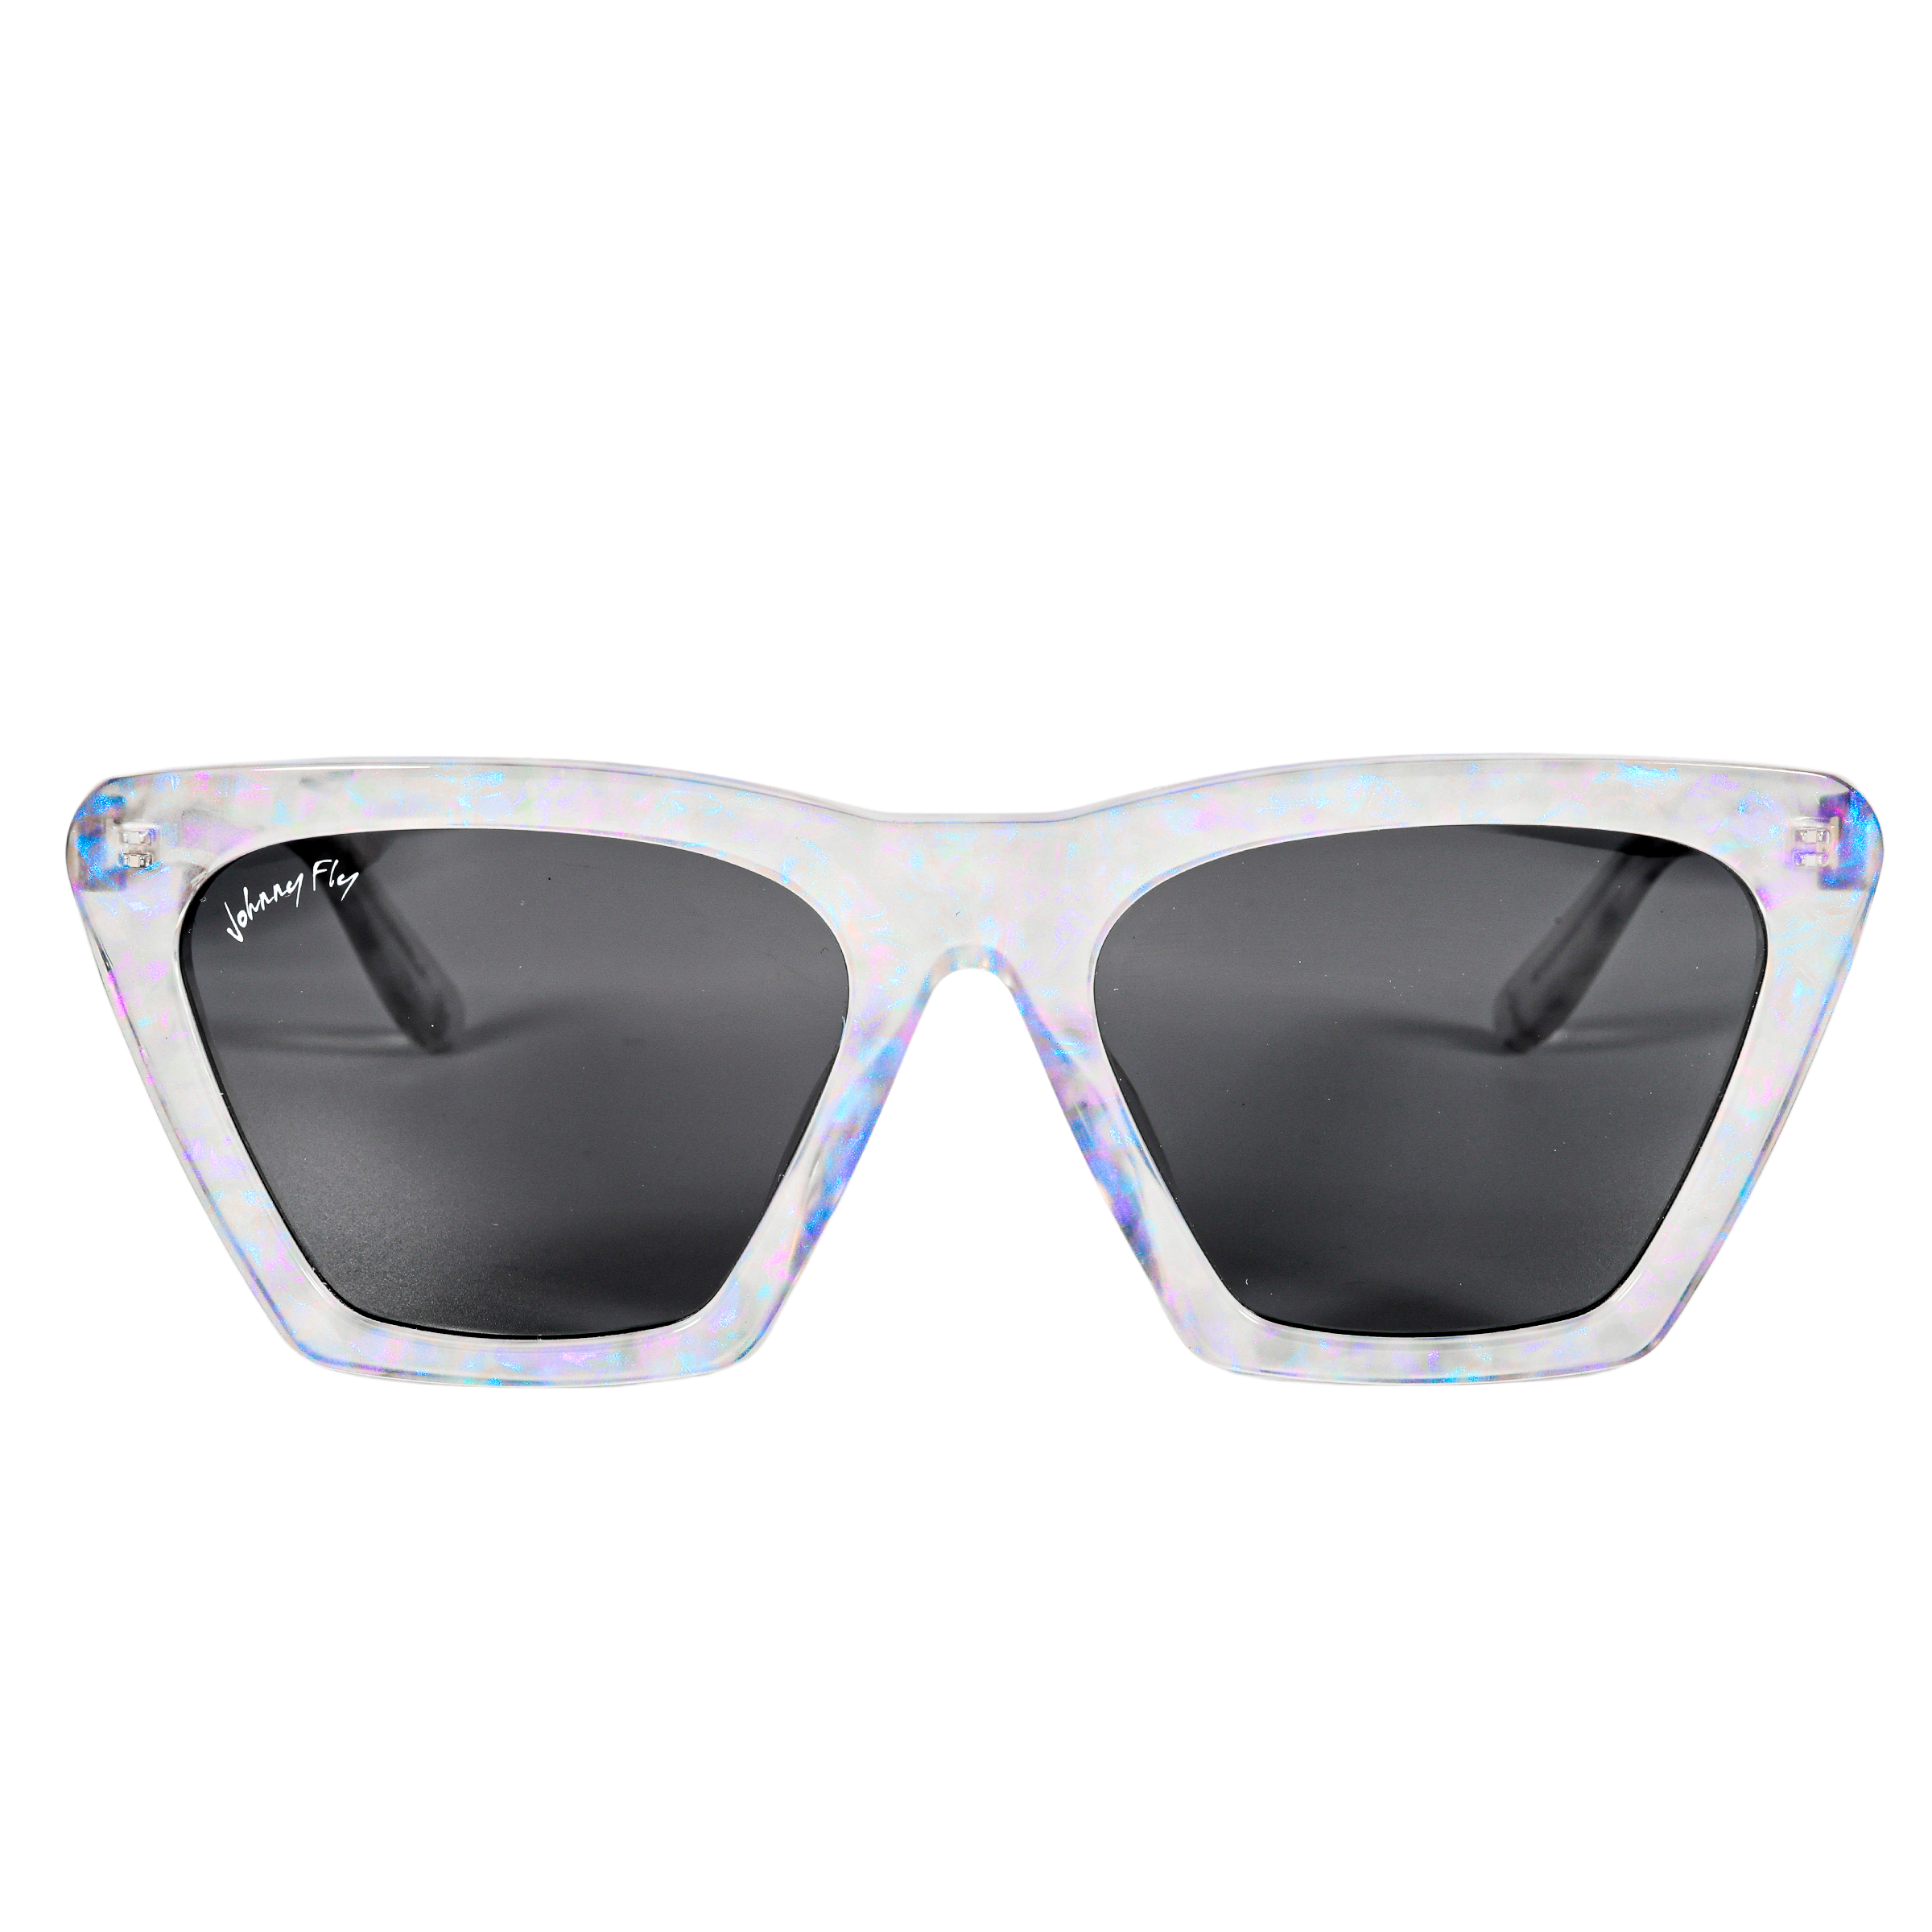 FIGURE - Unicorn Holographic Polarized wooden / acetate Sunglasses - Johnny Fly Eyewear | 